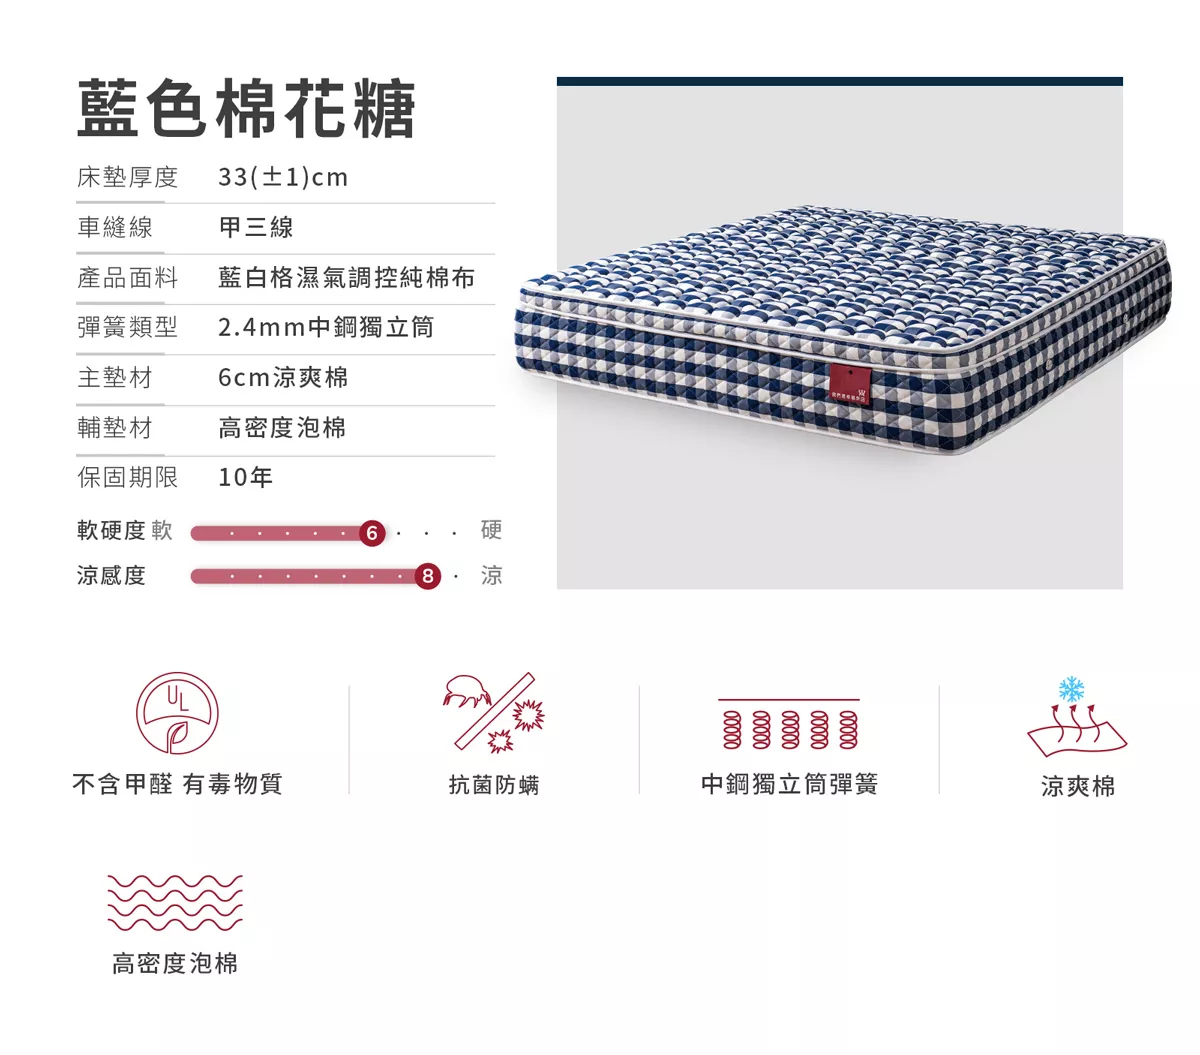 床墊推薦,蘆洲床墊推薦,幸福床墊,乳膠床墊,藍色棉花糖